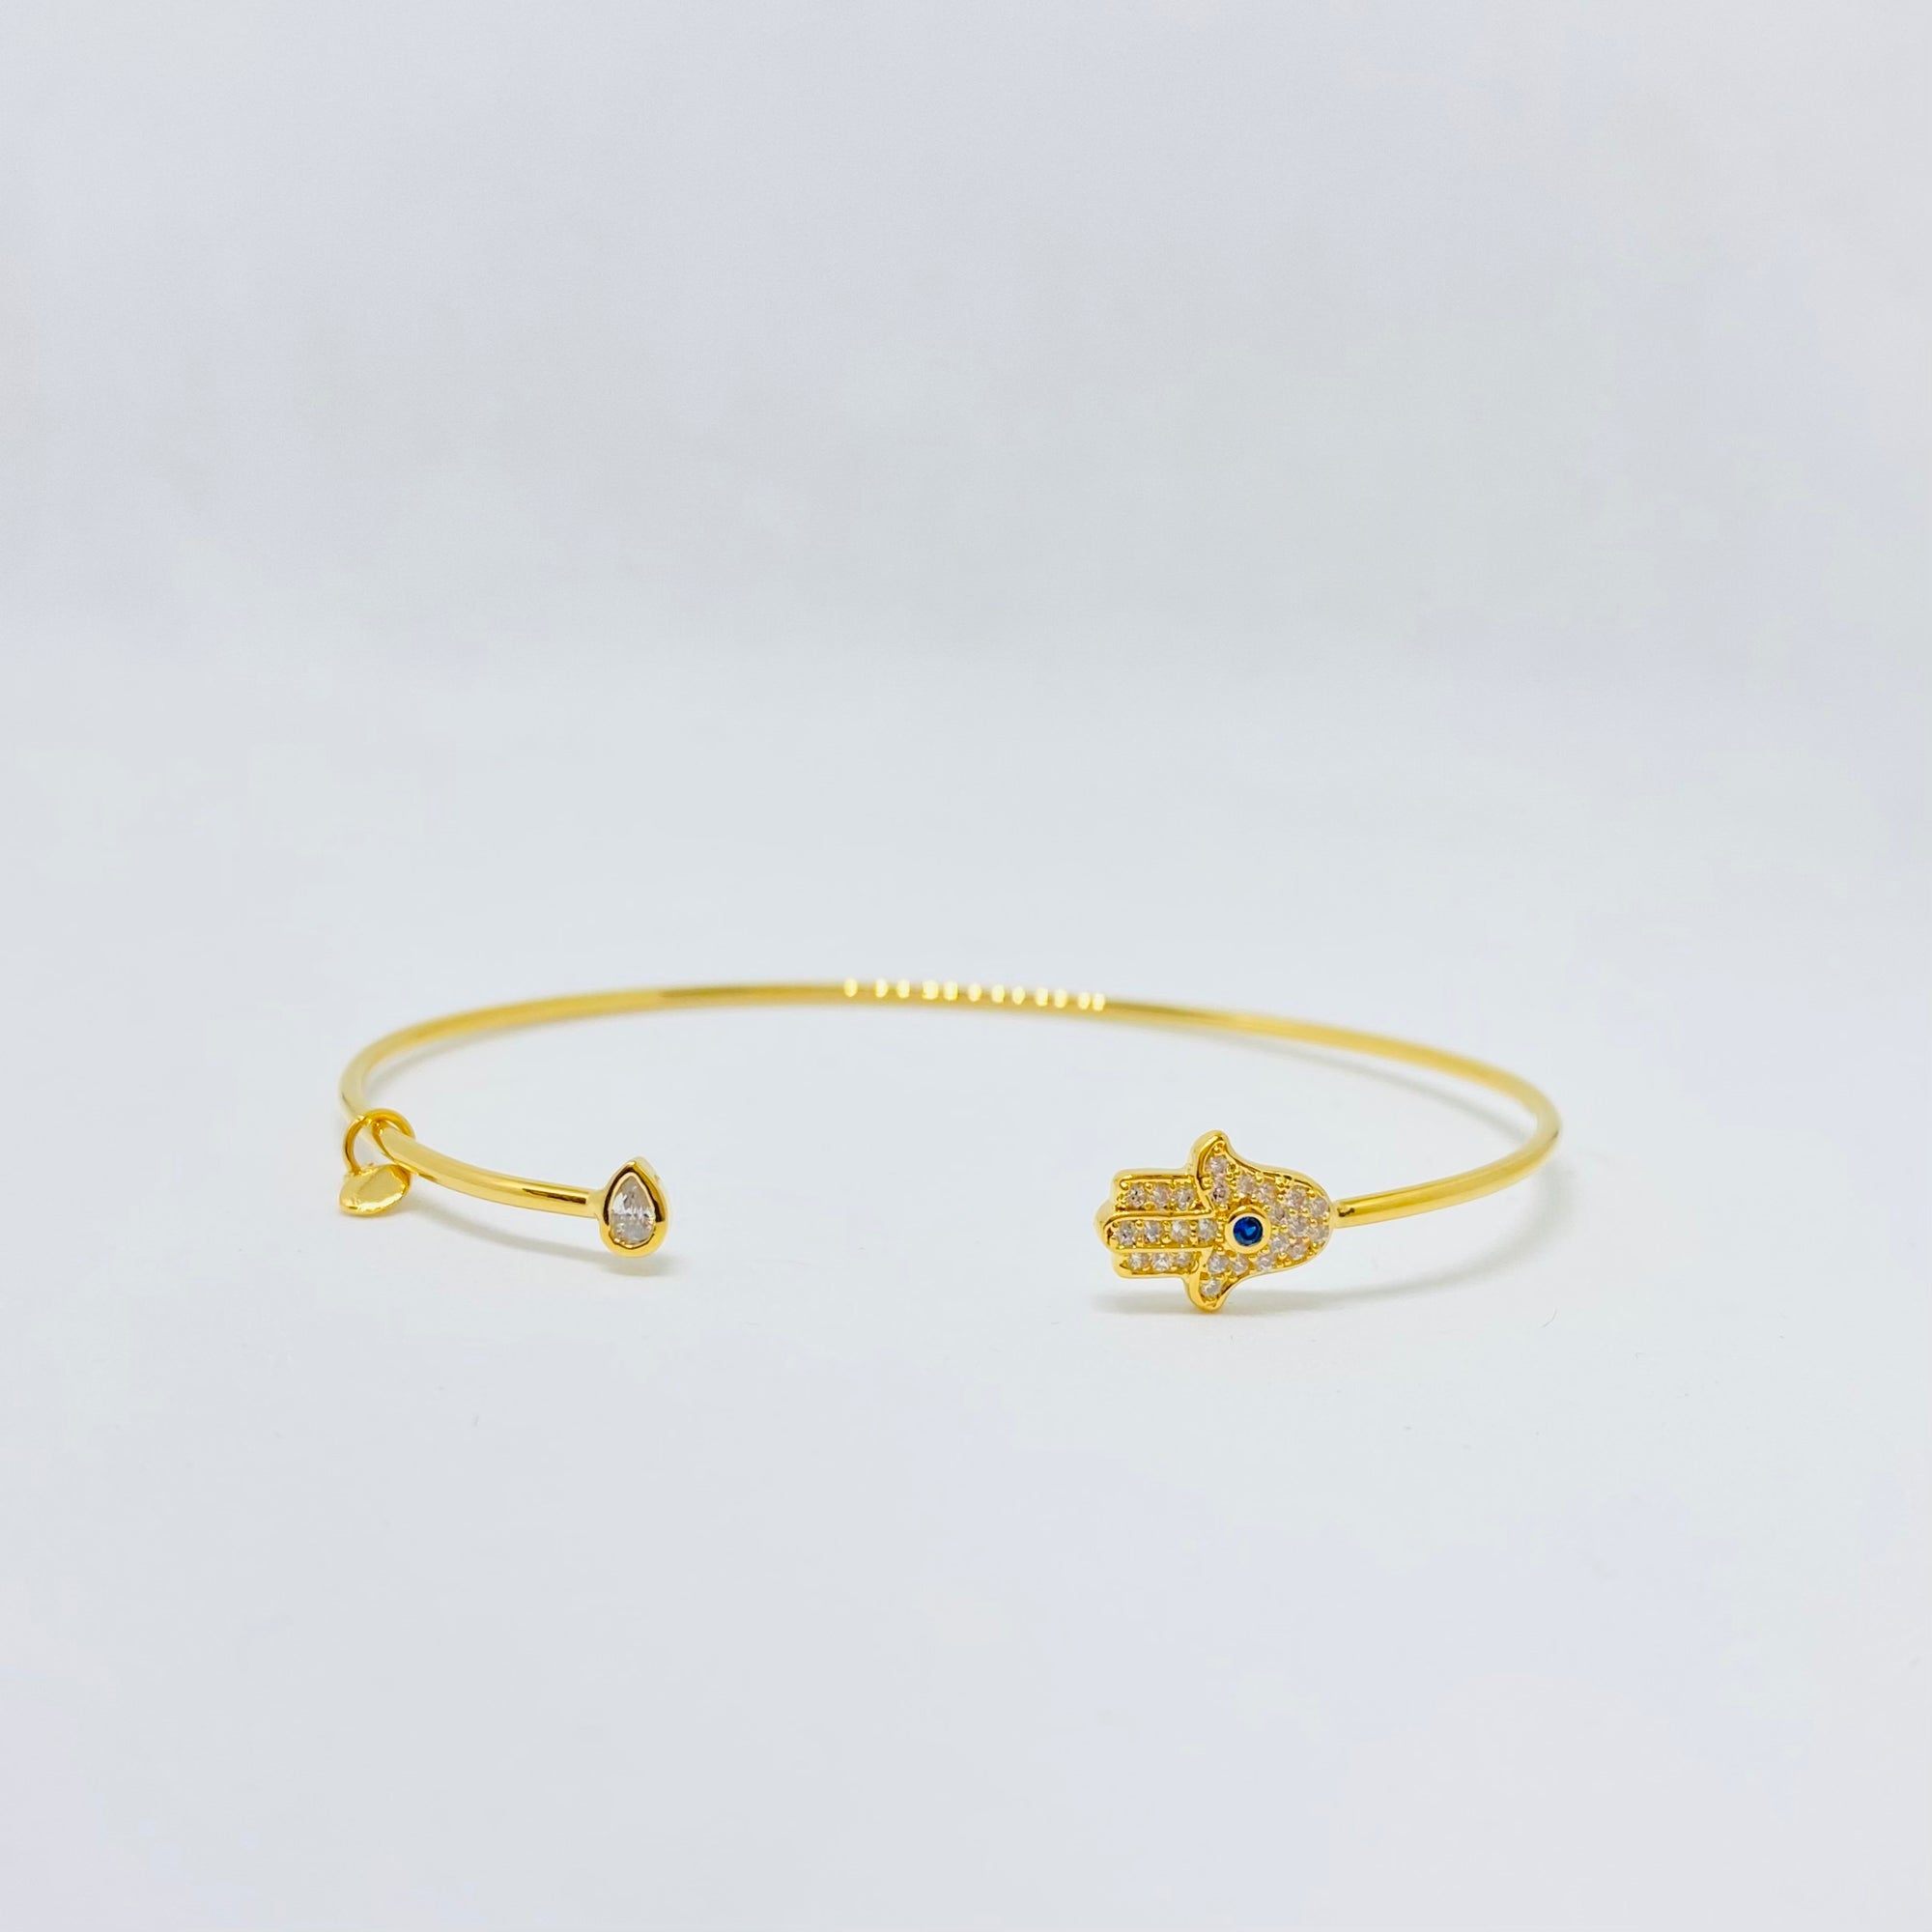 Tai - Hamsa with teardrop cuff bracelet